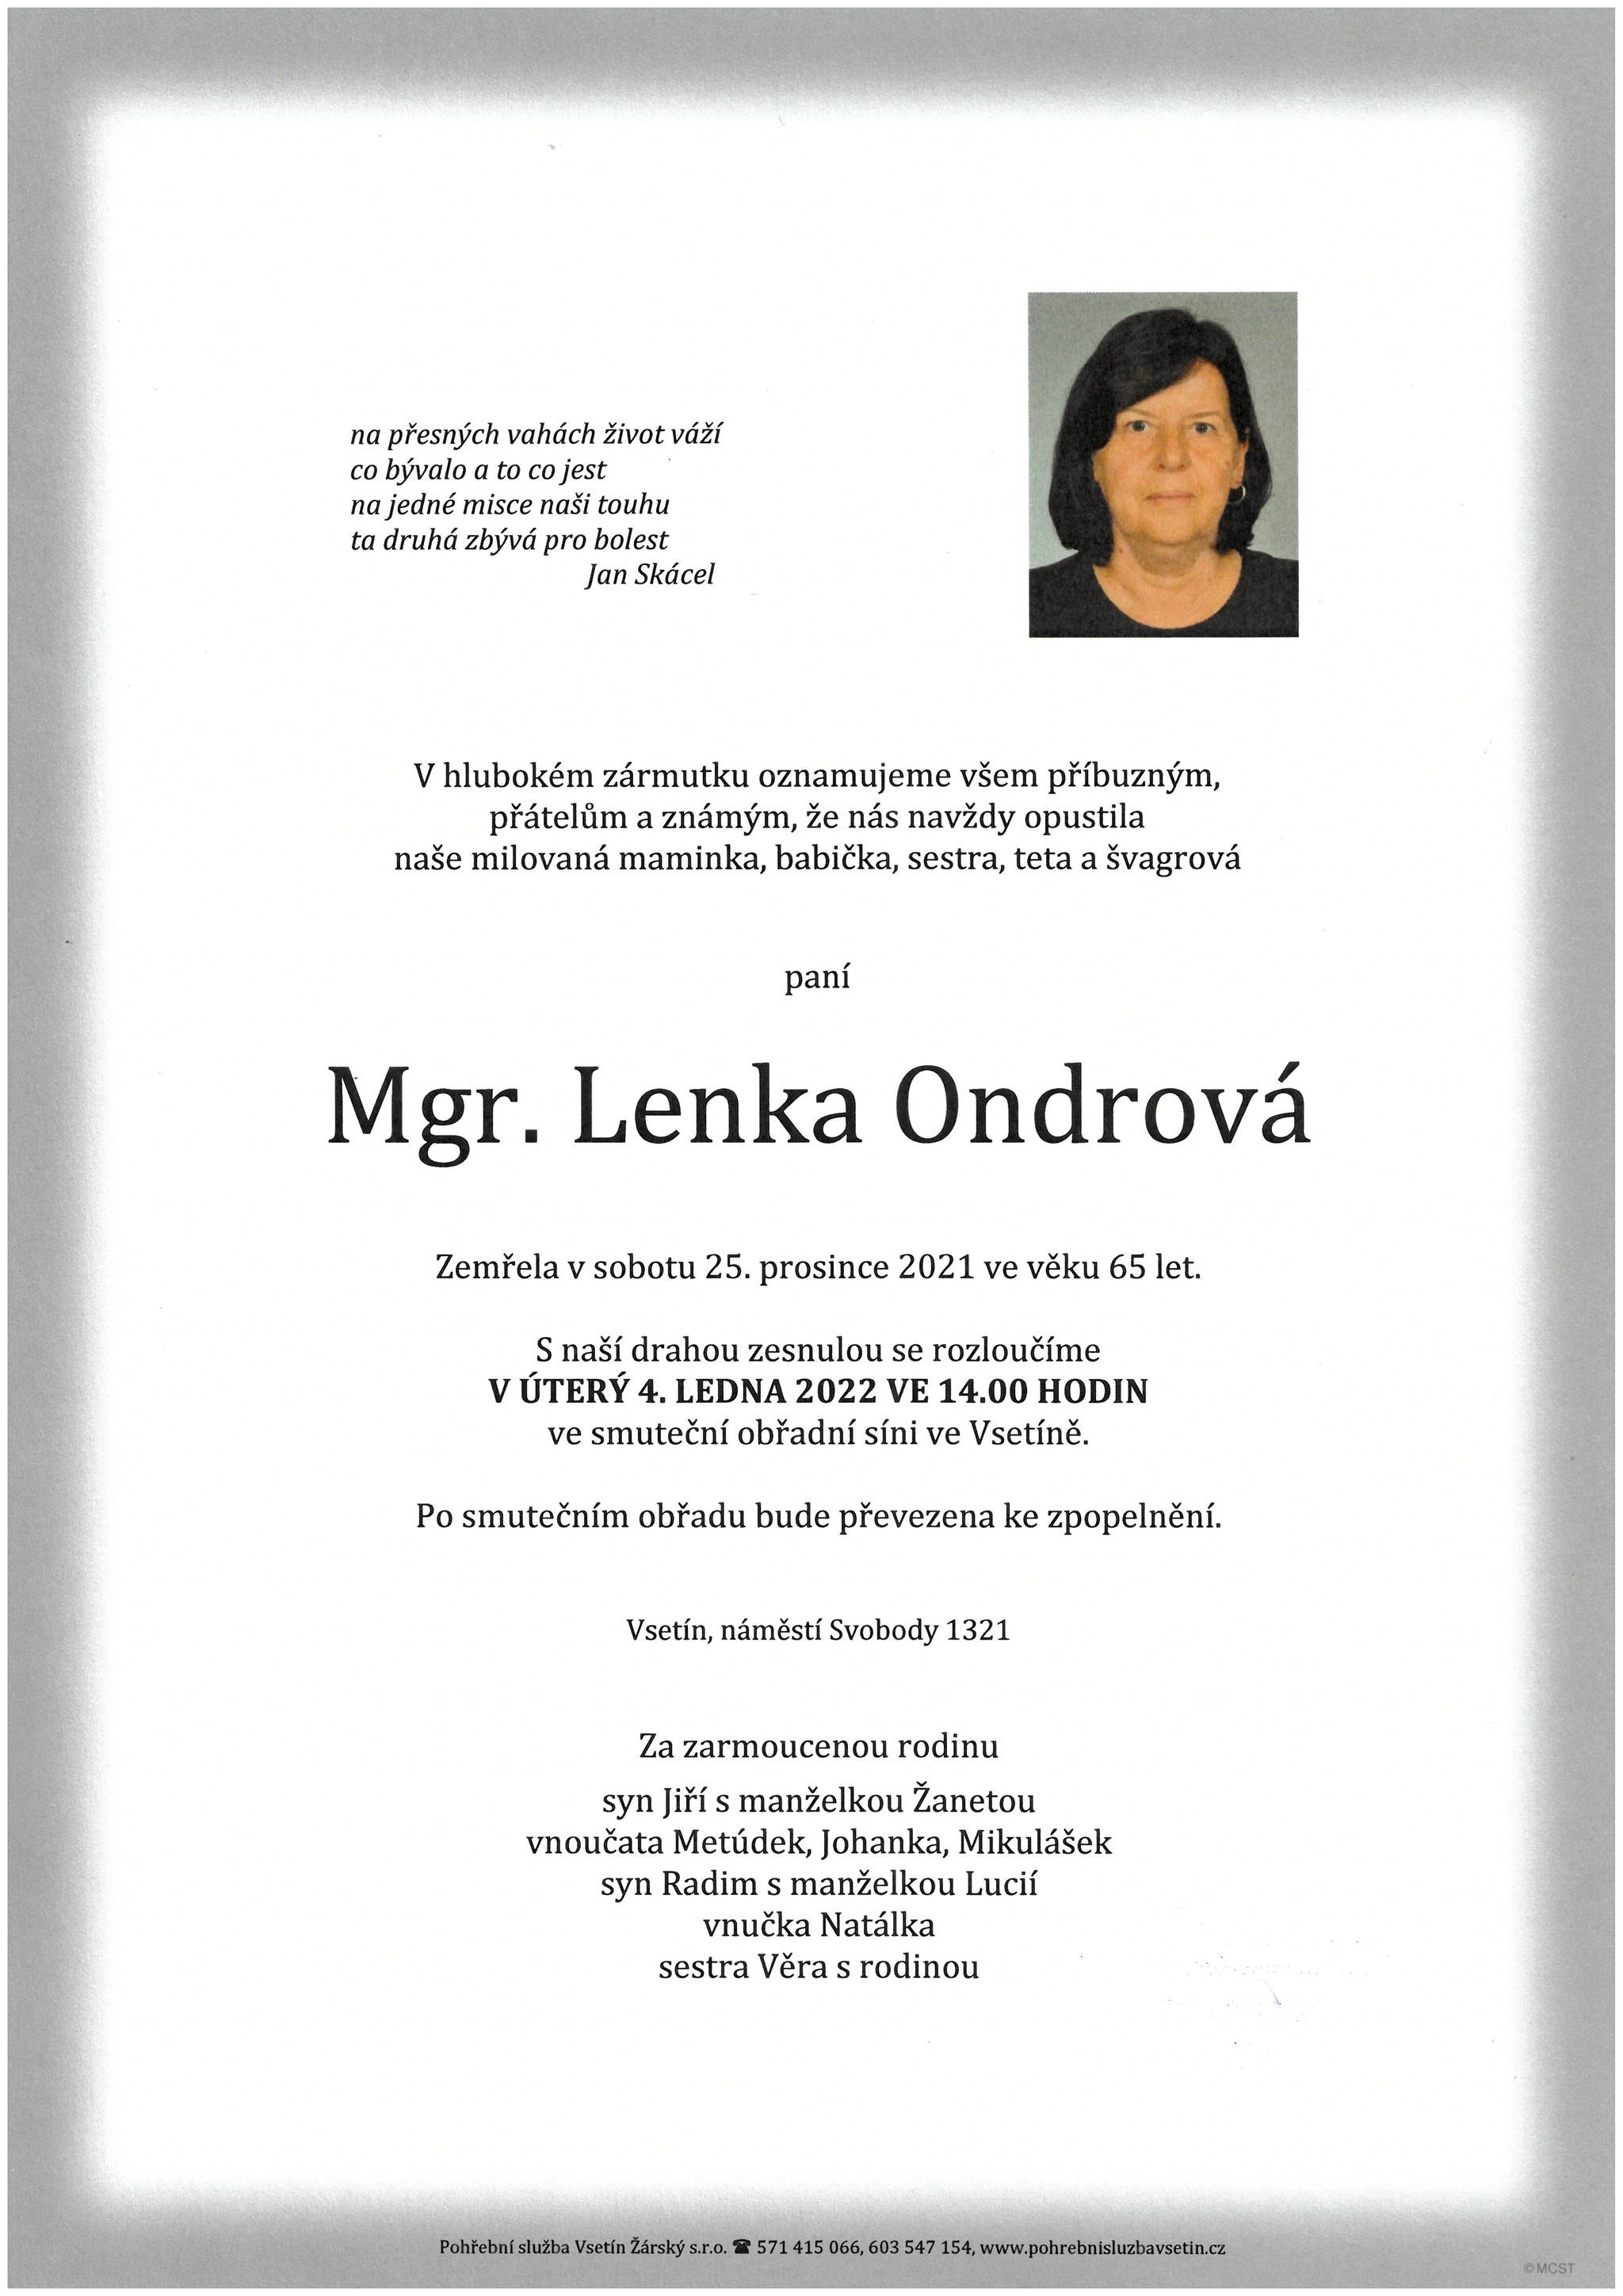 Mgr. Lenka Ondrová